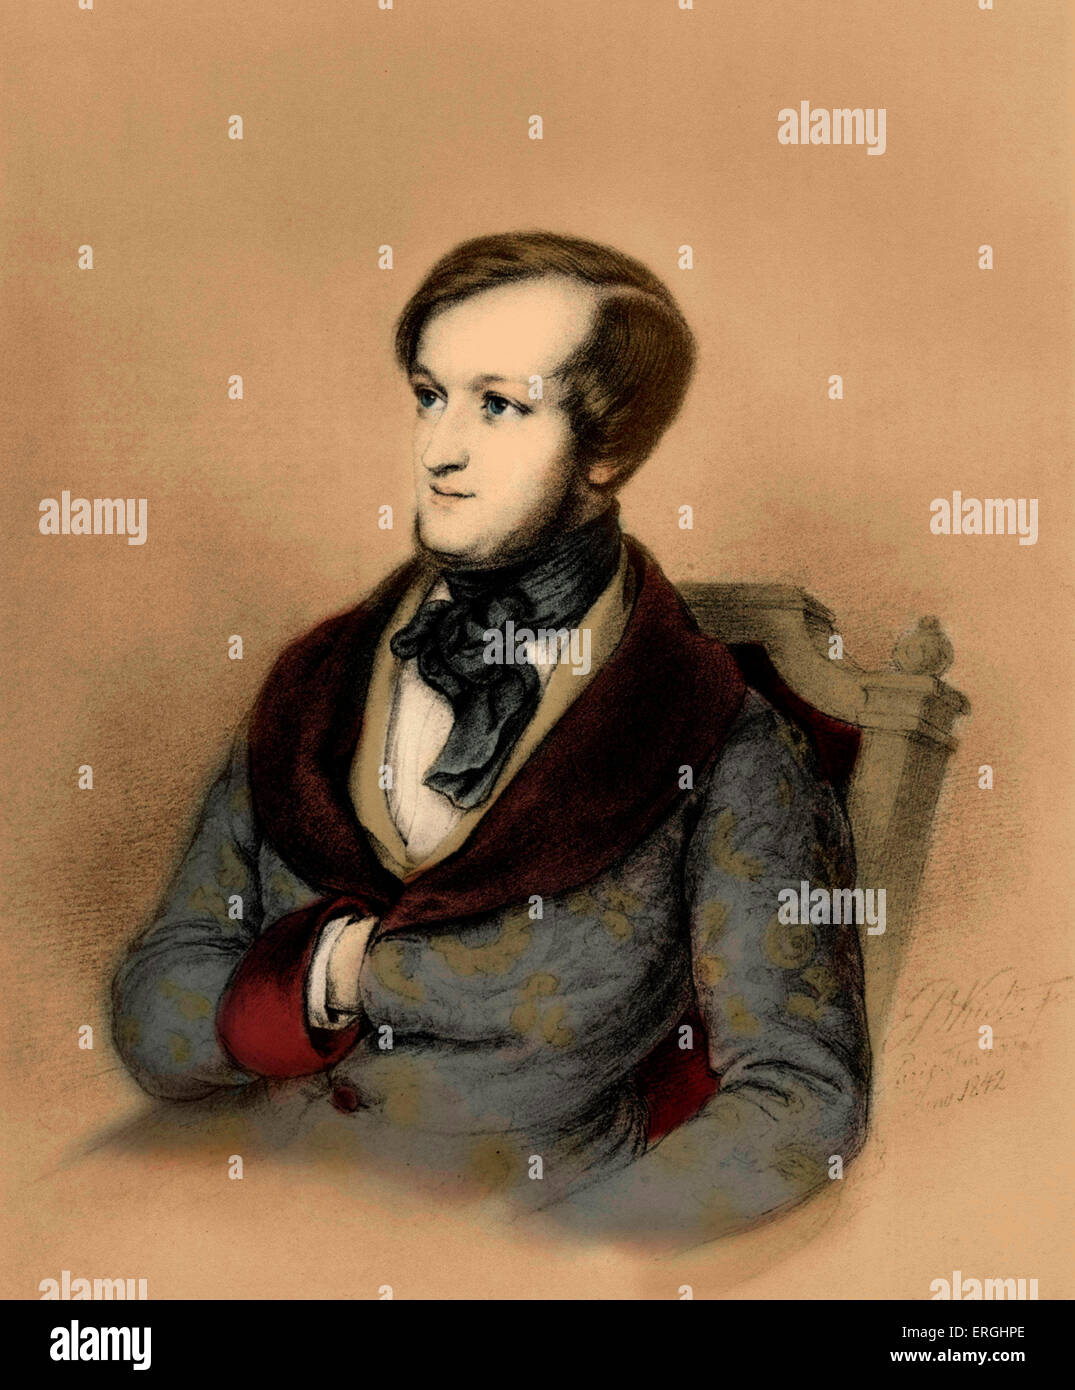 Richard Wagner à Paris en tant que jeune homme. Compositeur allemand. Dessin de E.B. Kietz, signé en 1842. (1813-1883) Banque D'Images